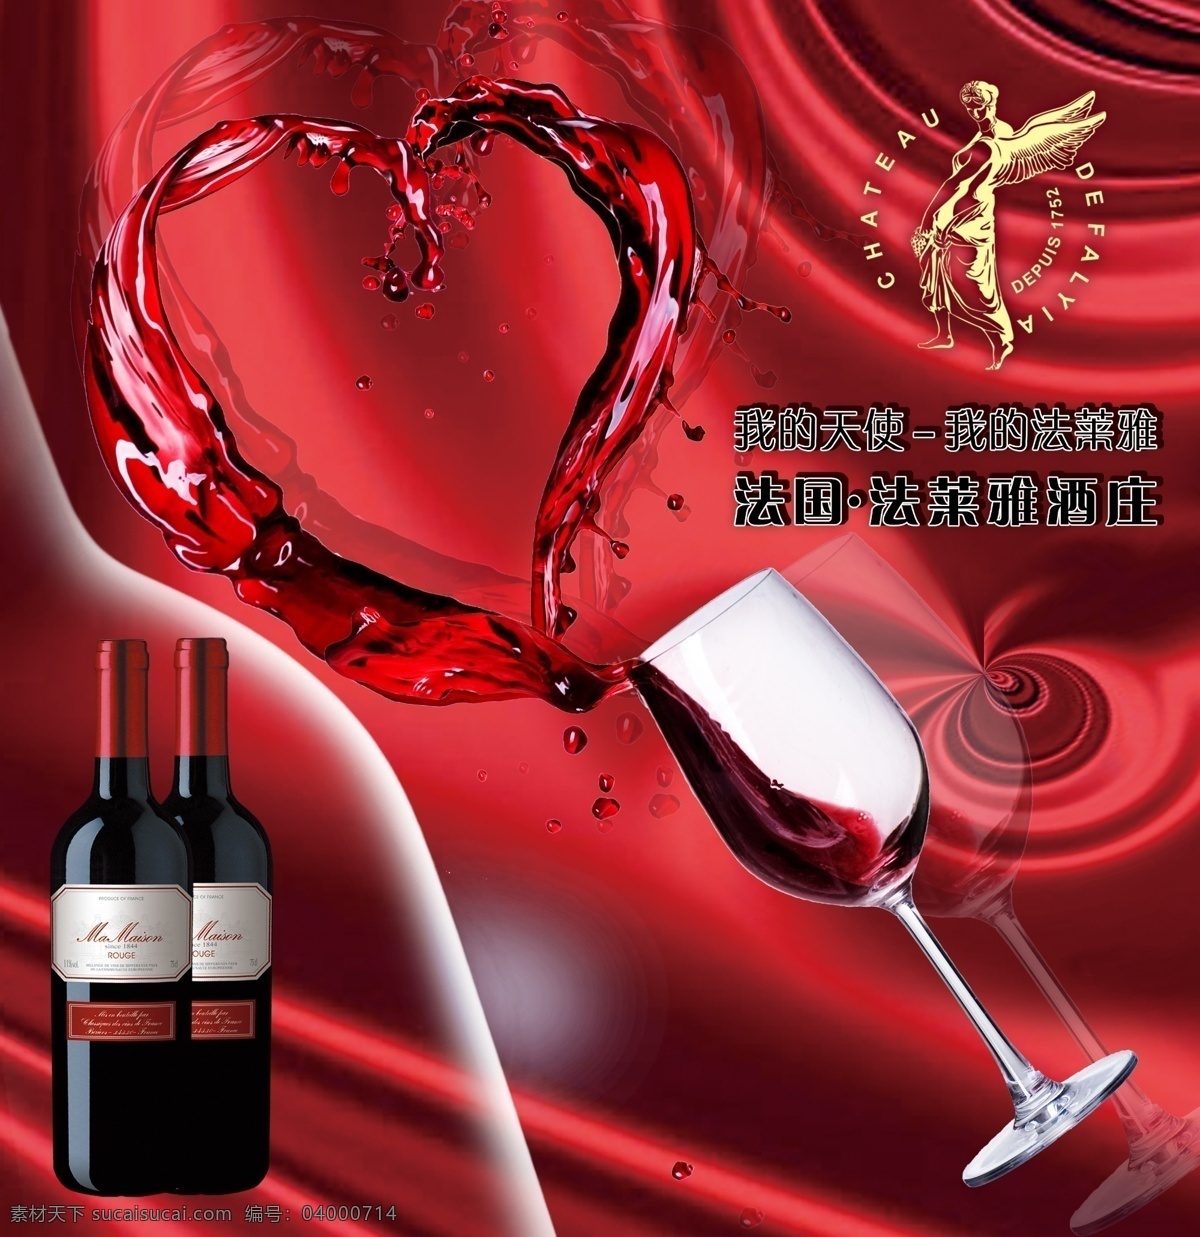 法 莱雅 红酒 法国红酒 红酒广告 爱心红酒 爱心红酒酒杯 法莱雅红酒 法莱雅 原创设计 其他原创设计